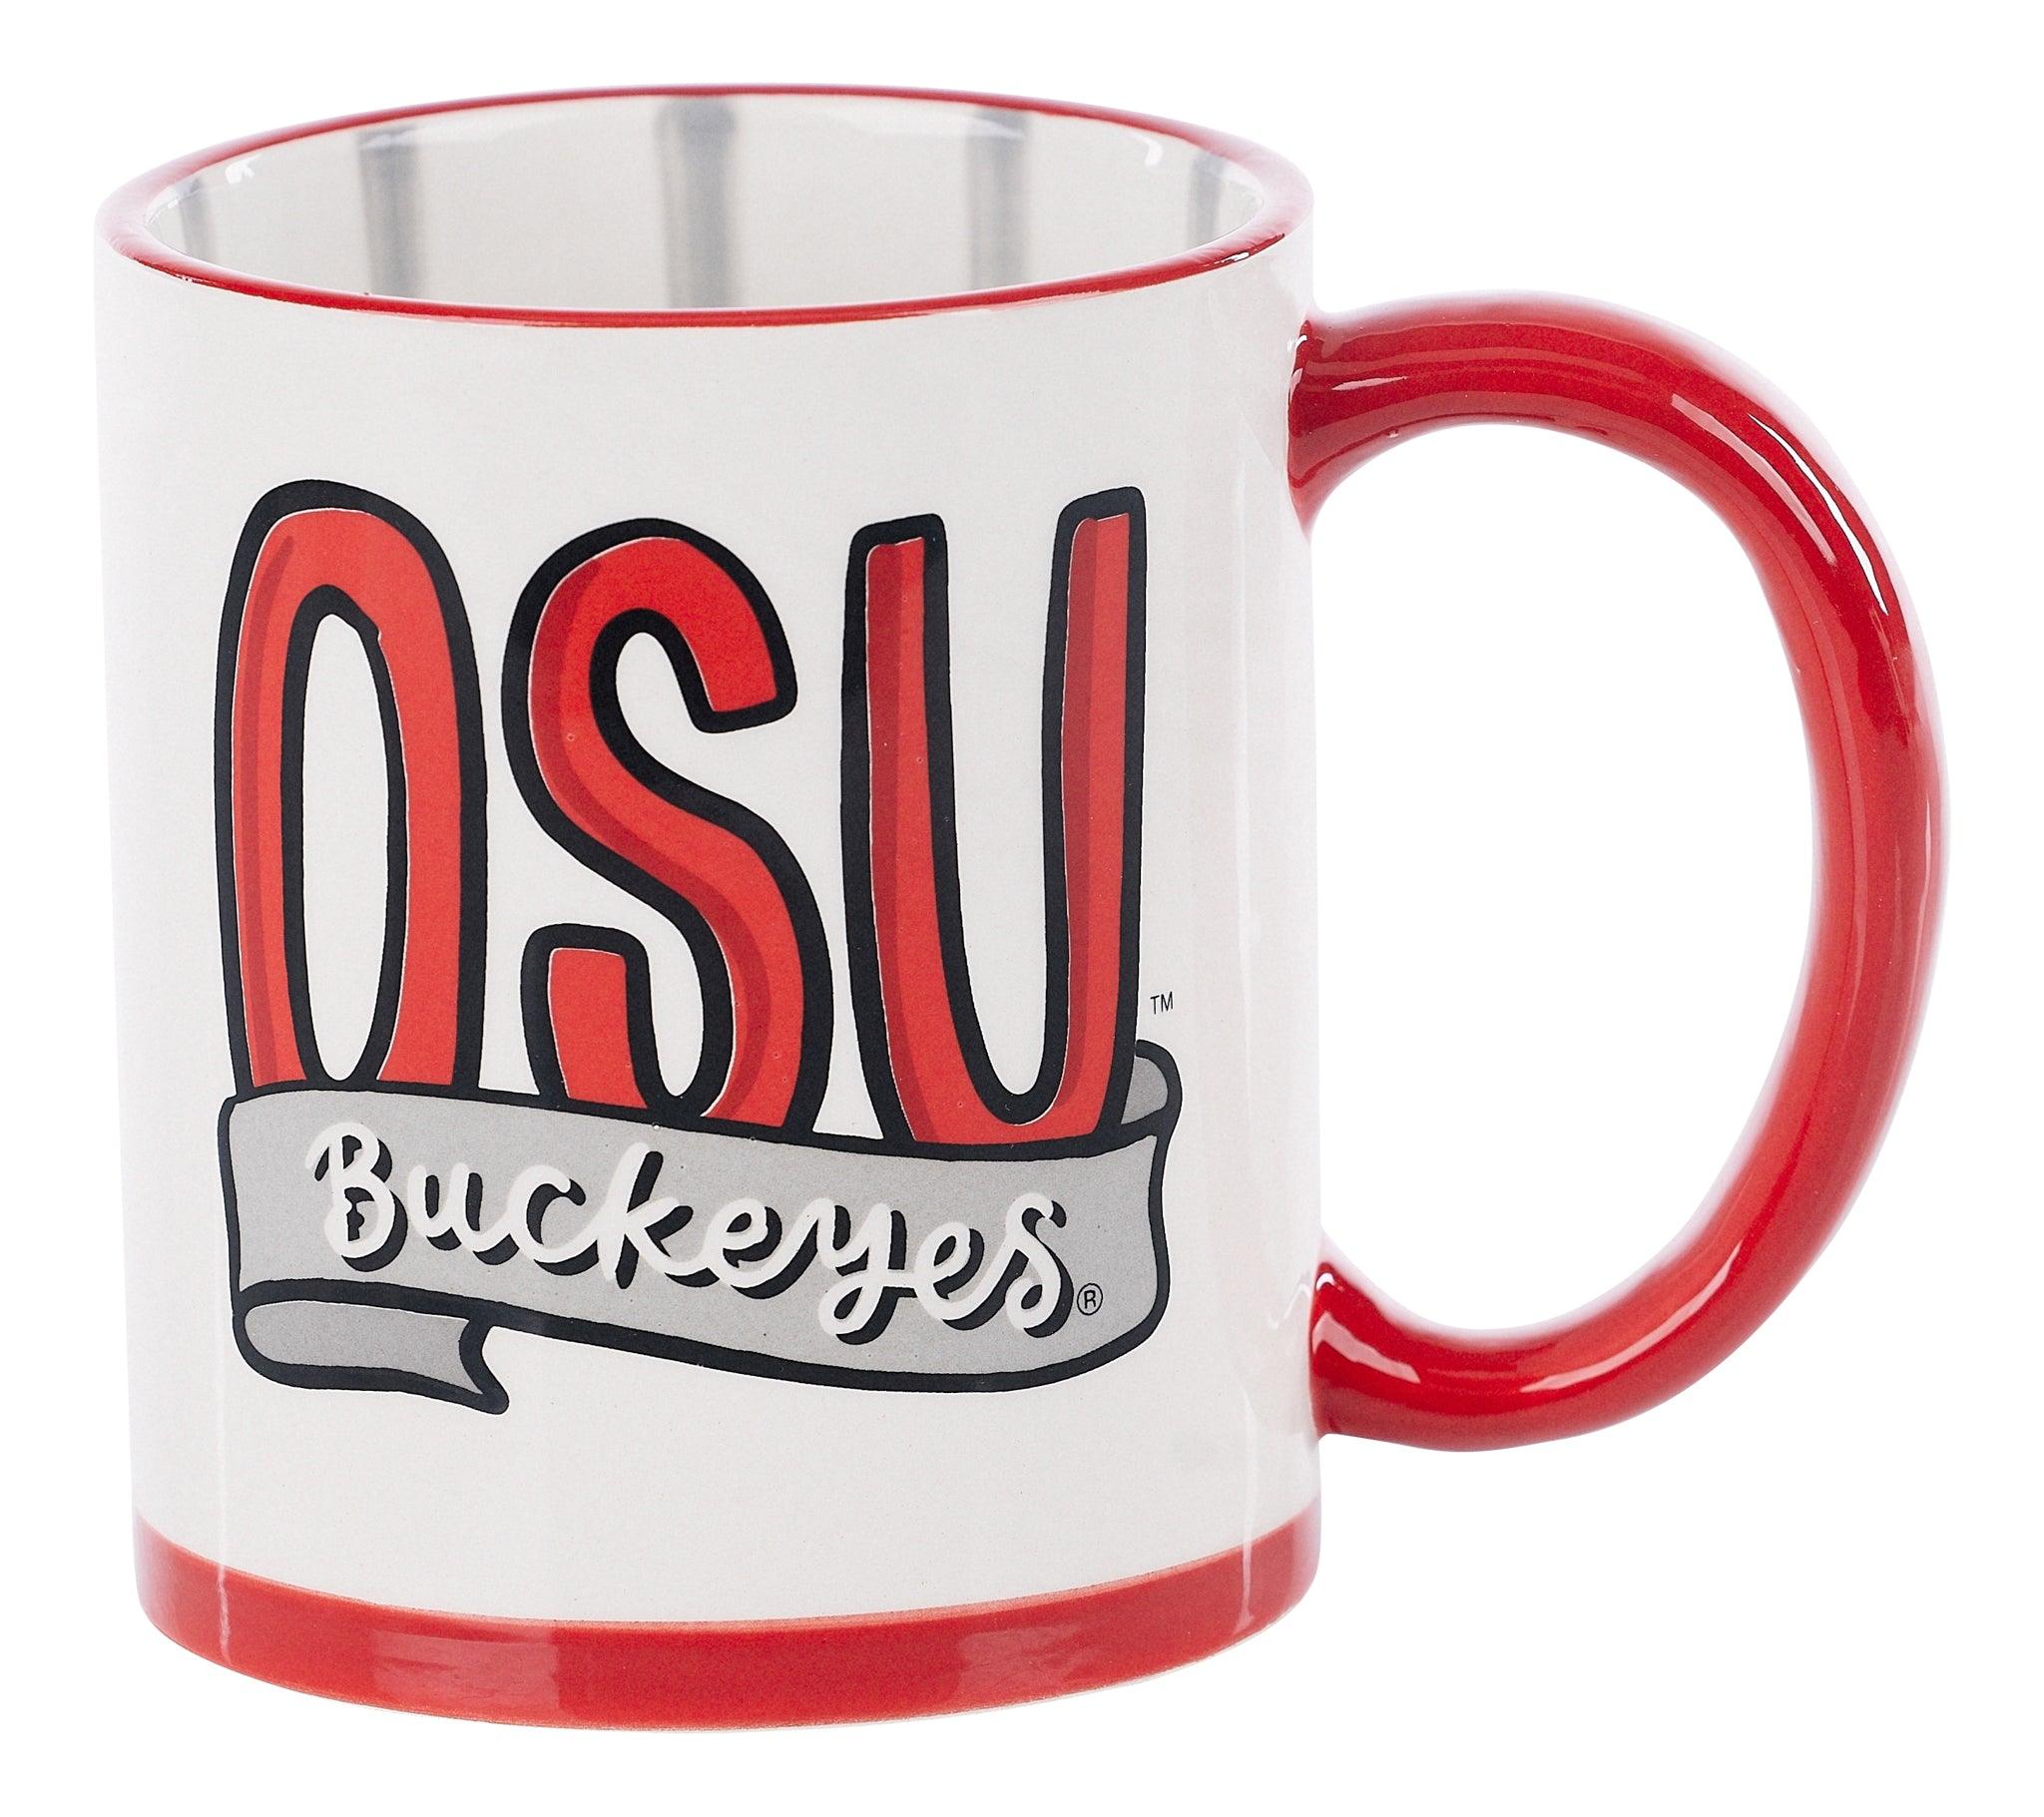 Ohio State Buckeyes 15 Oz. Alumni Mug